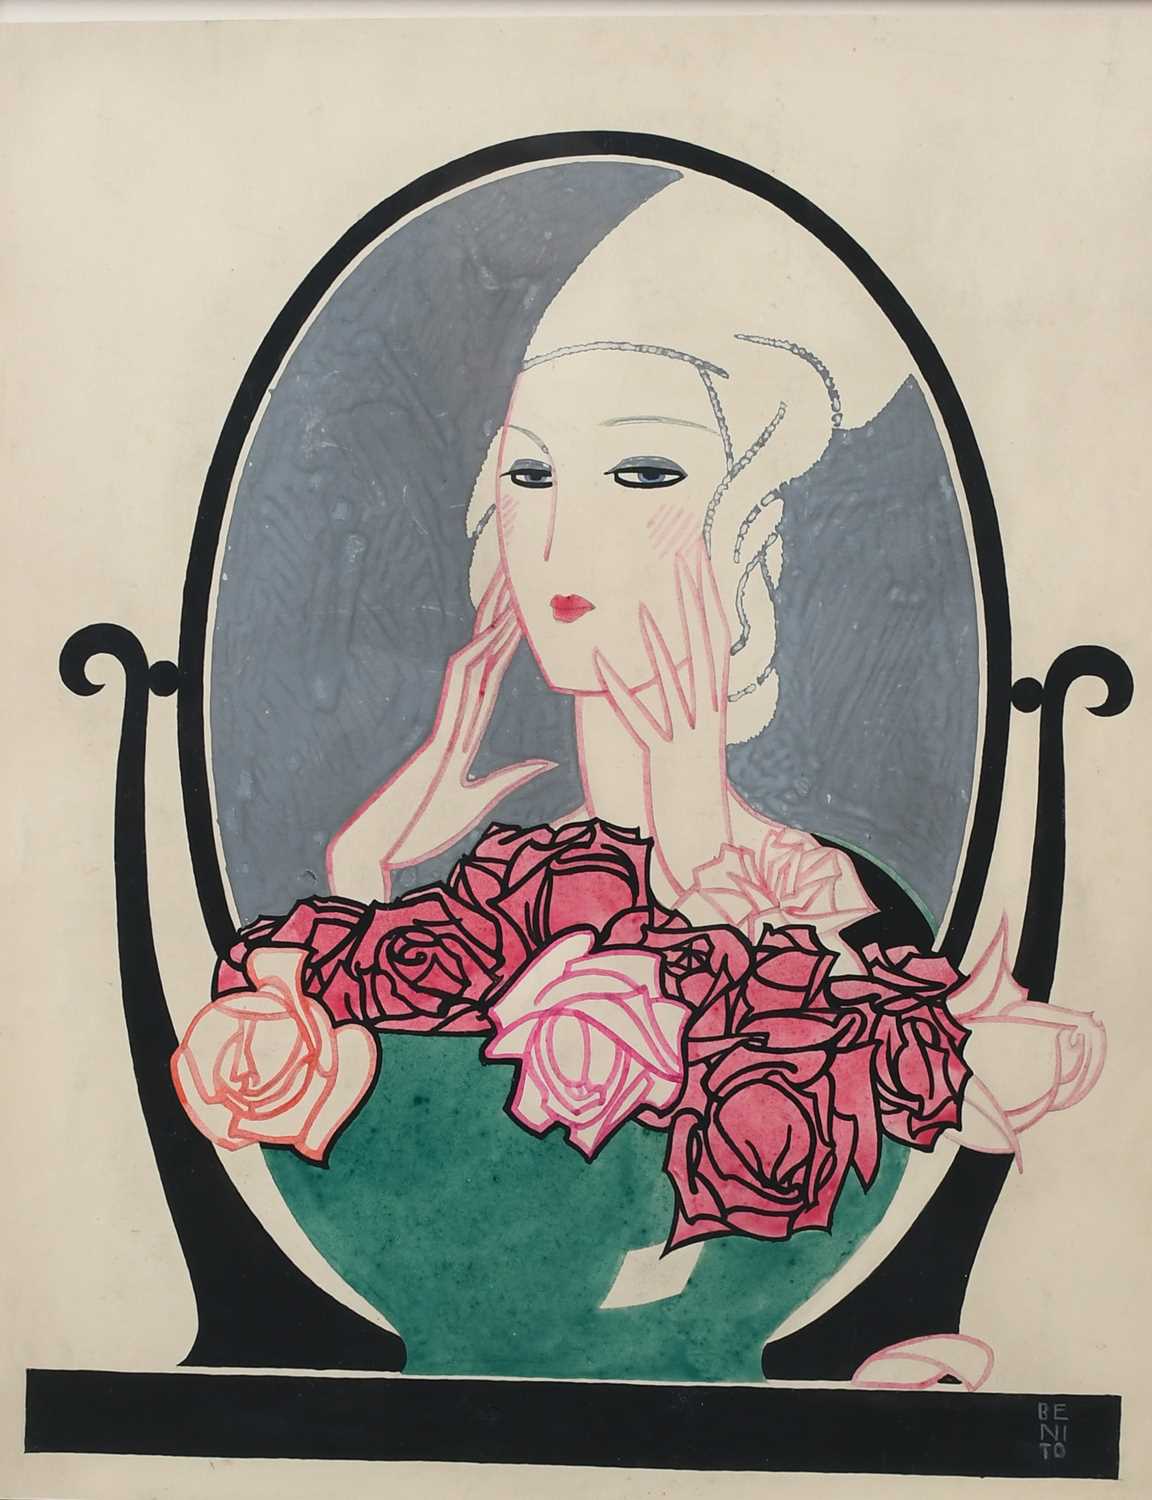 Φ Eduardo Benito (Spanish 1891-1981) Magazine cover design with an elegant lady looking at herself